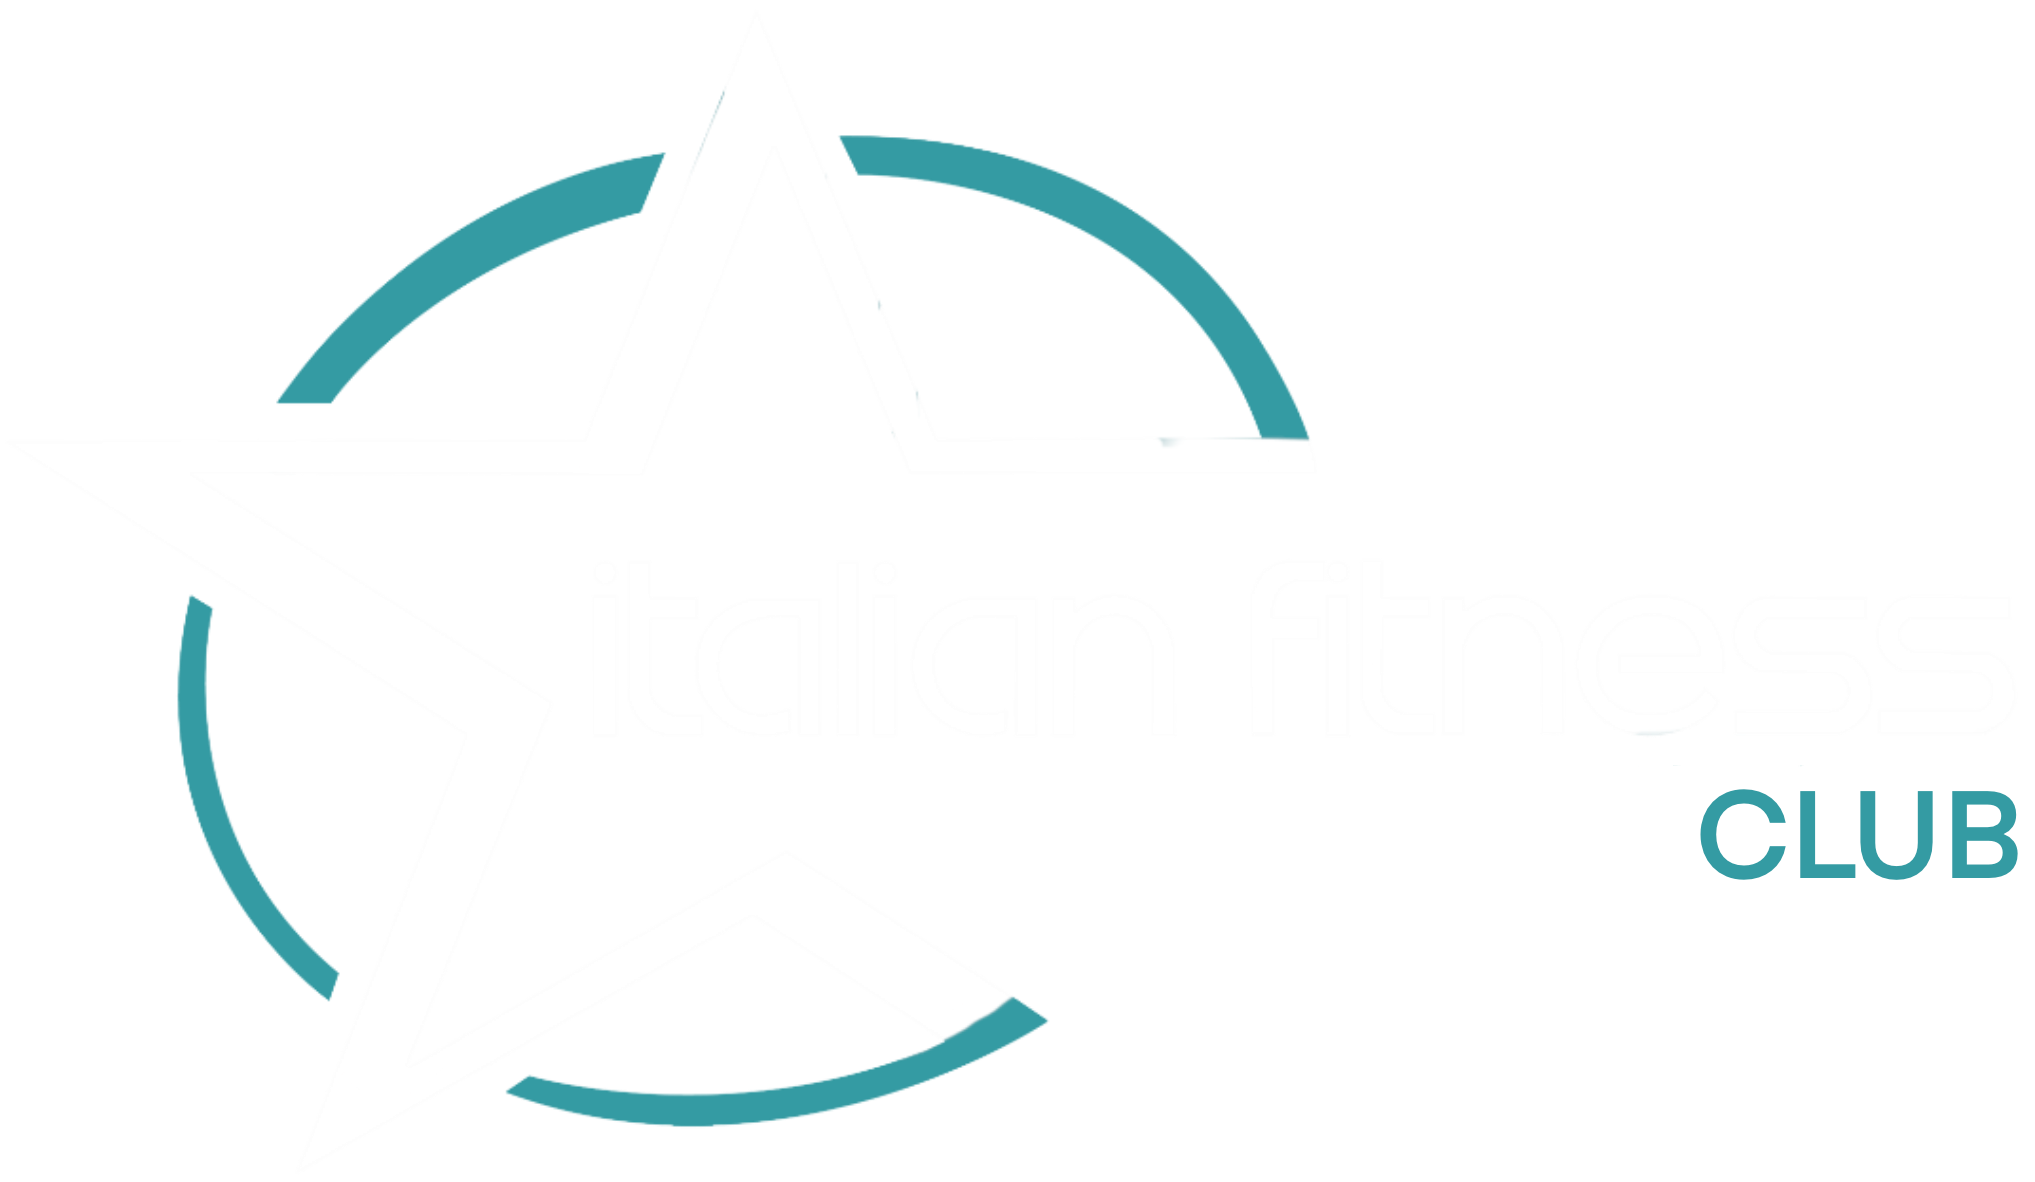 Club Italian Fitness